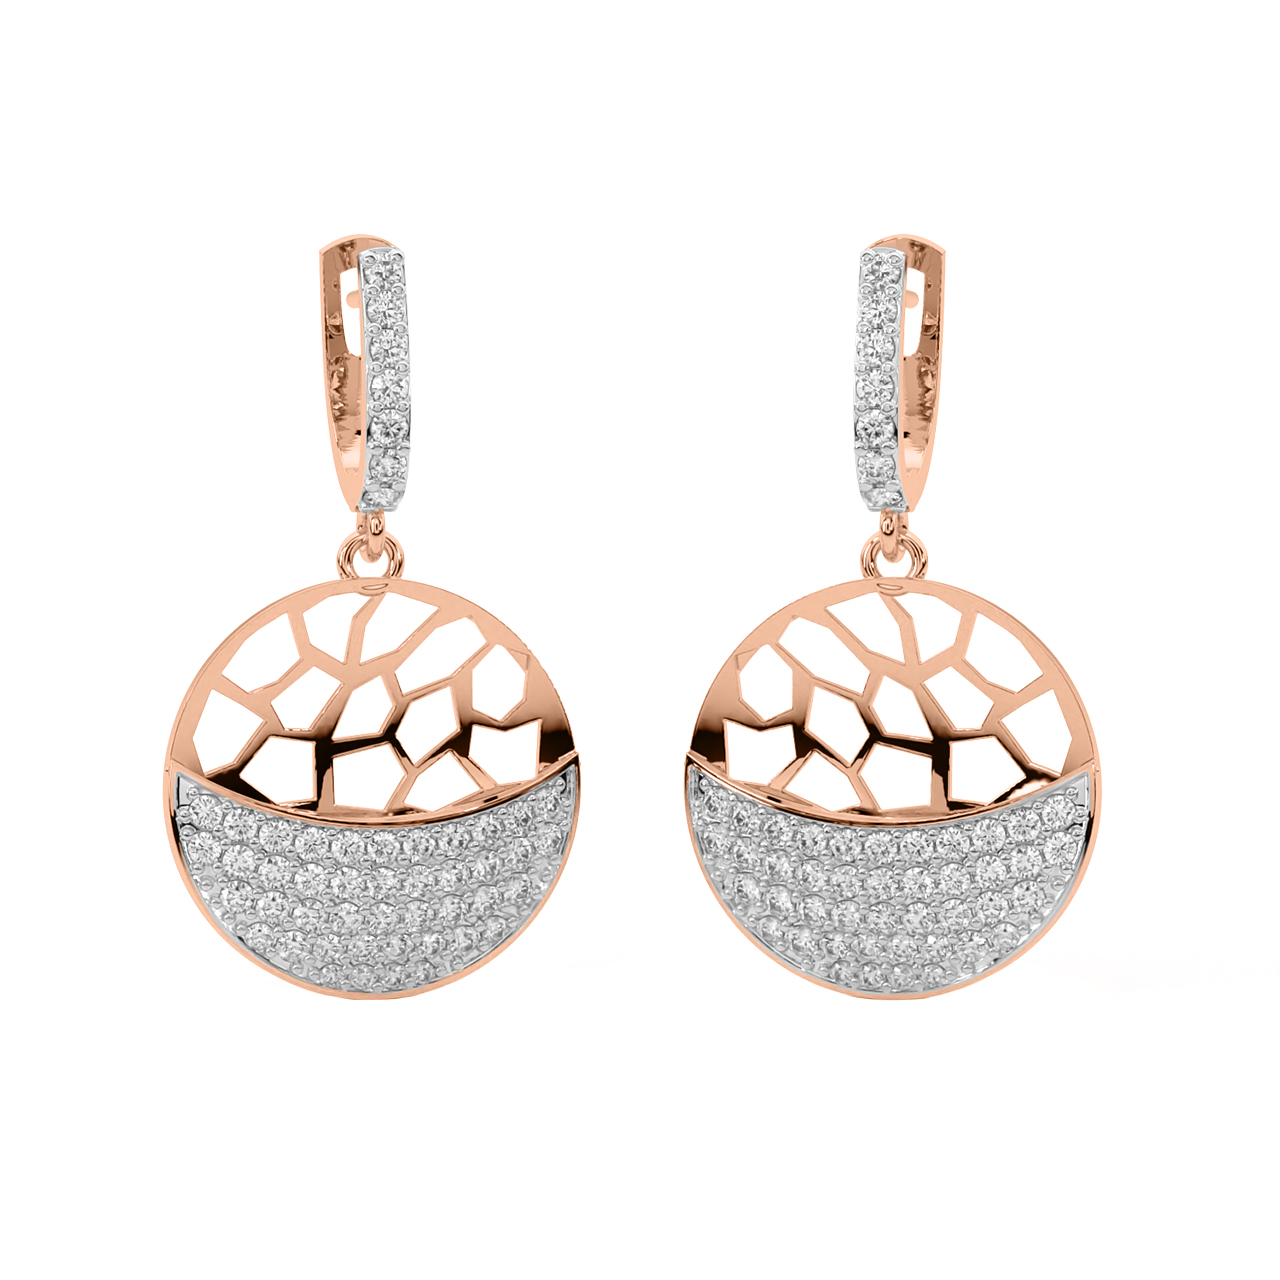 Sphere Design Diamond Earrings